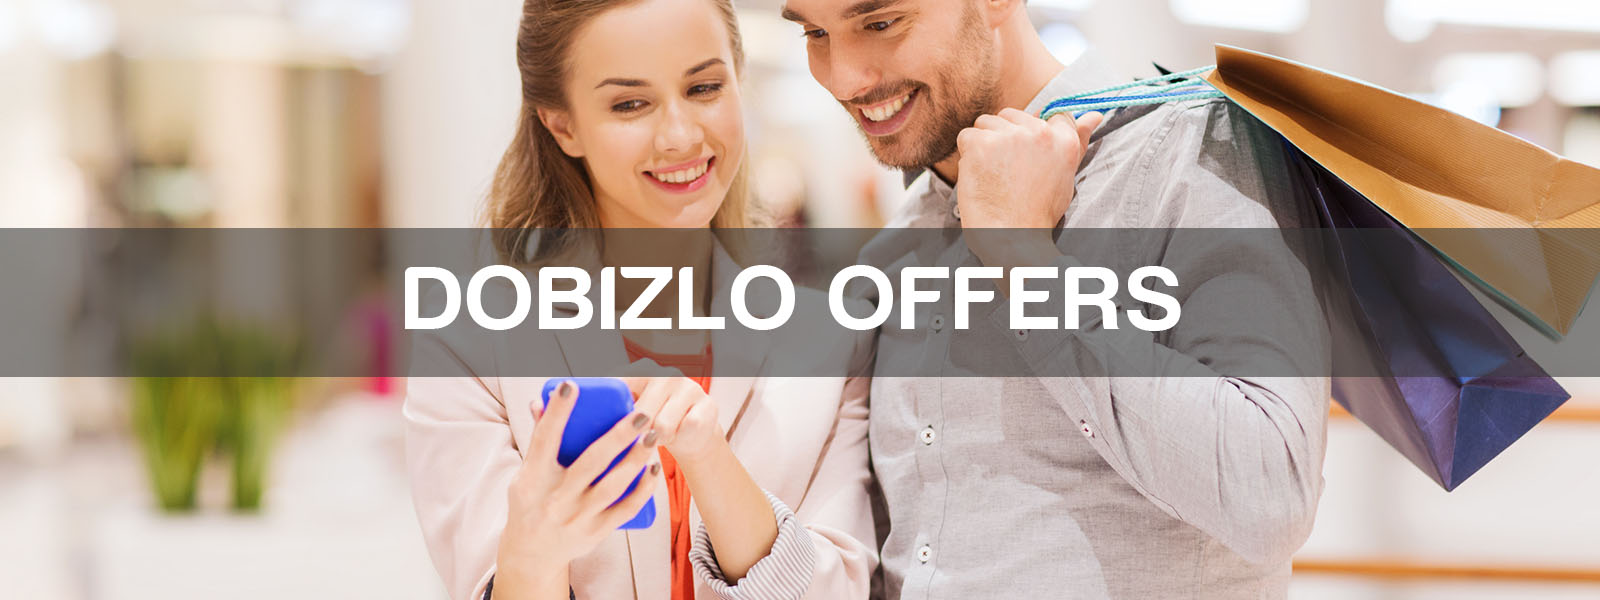 dOBIZLO-OFFERS-Merchant Website